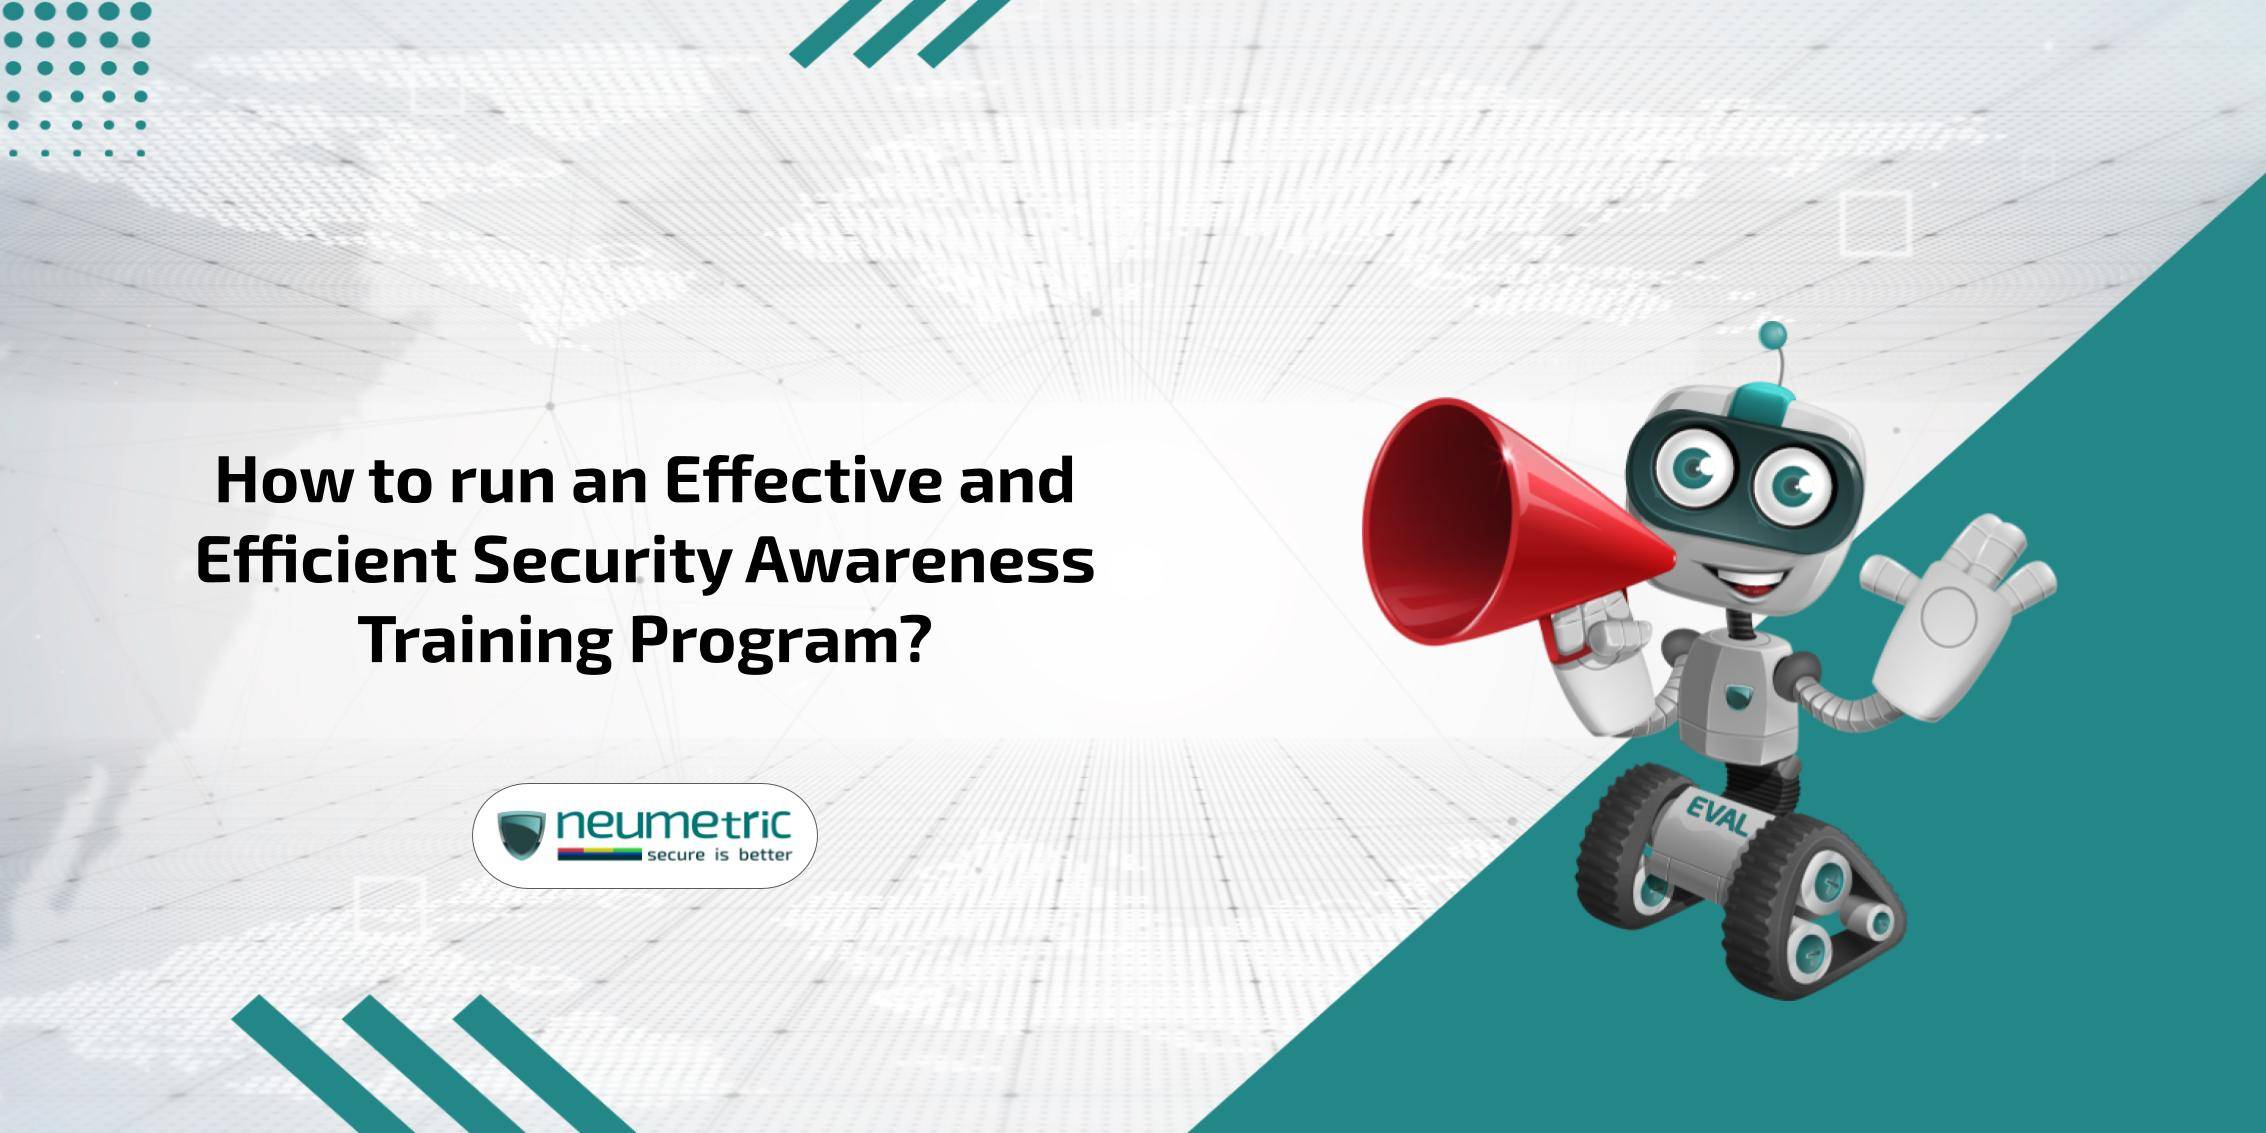 Security awareness training programs